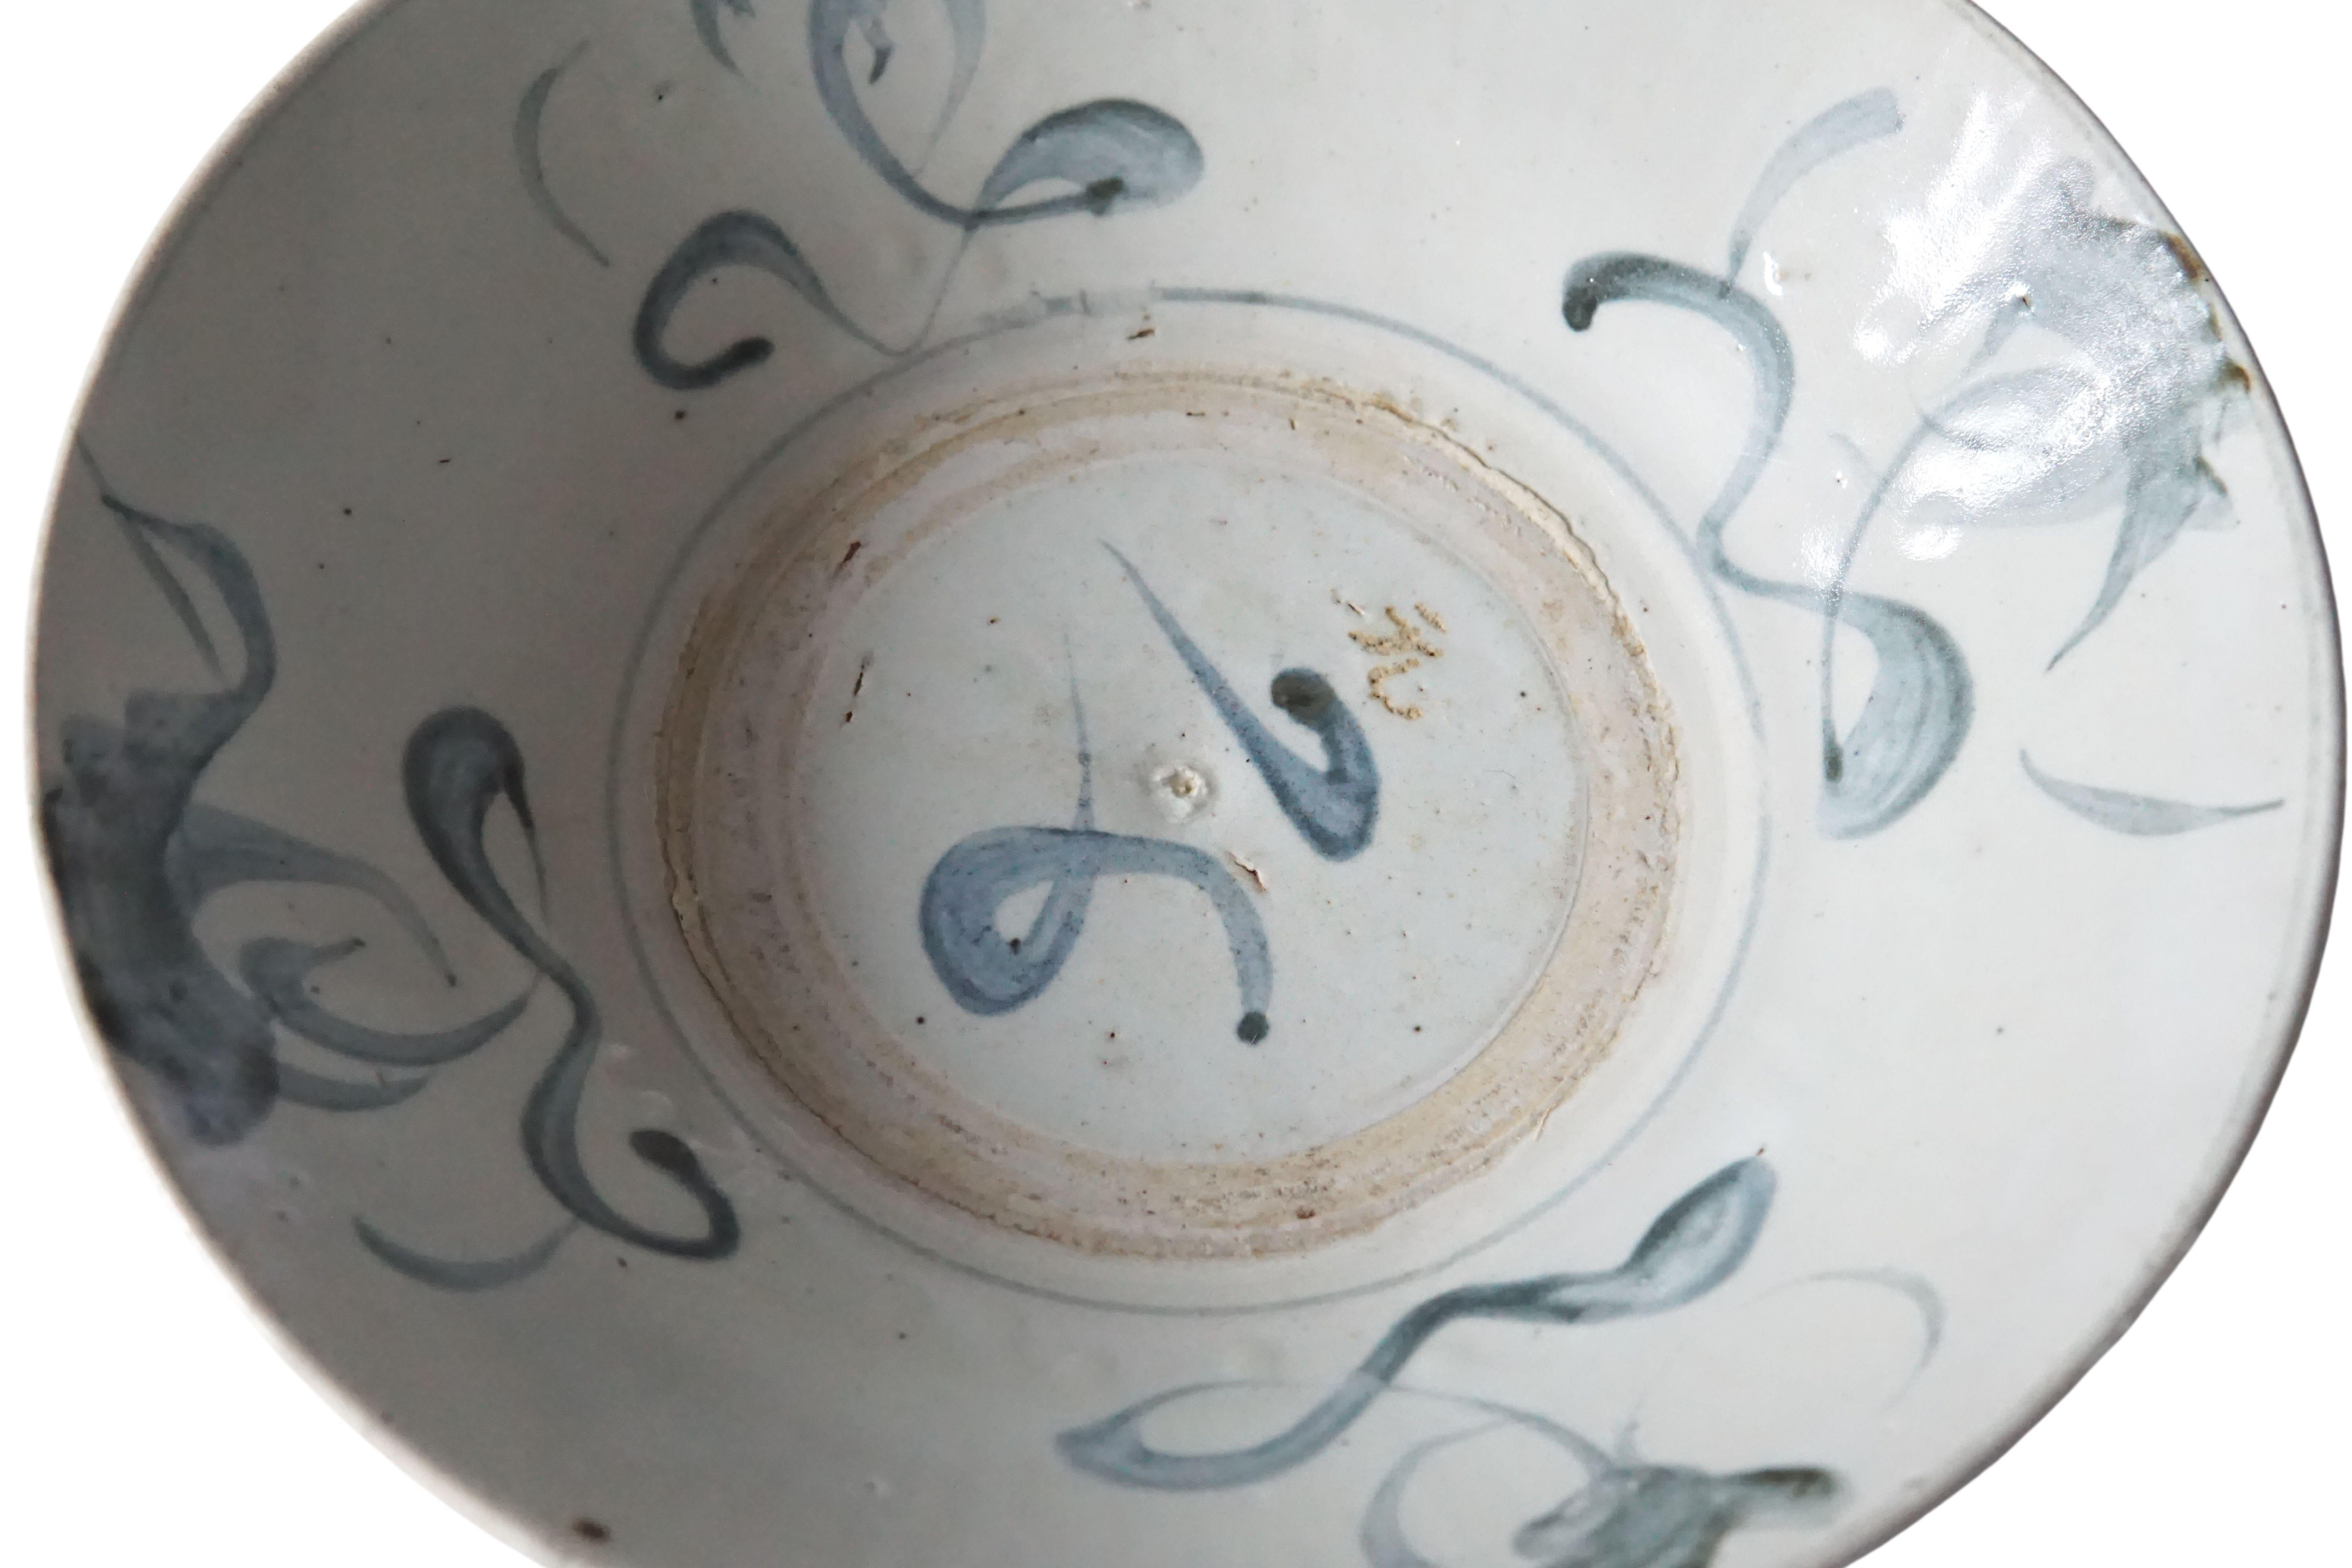 Cette assiette en céramique chinoise est dominée par une glaçure bleu-gris et présente de magnifiques traits bleus peints à la main. Autrefois utilisée comme assiette de tous les jours, elle est aujourd'hui un bel exemple de céramique chinoise et